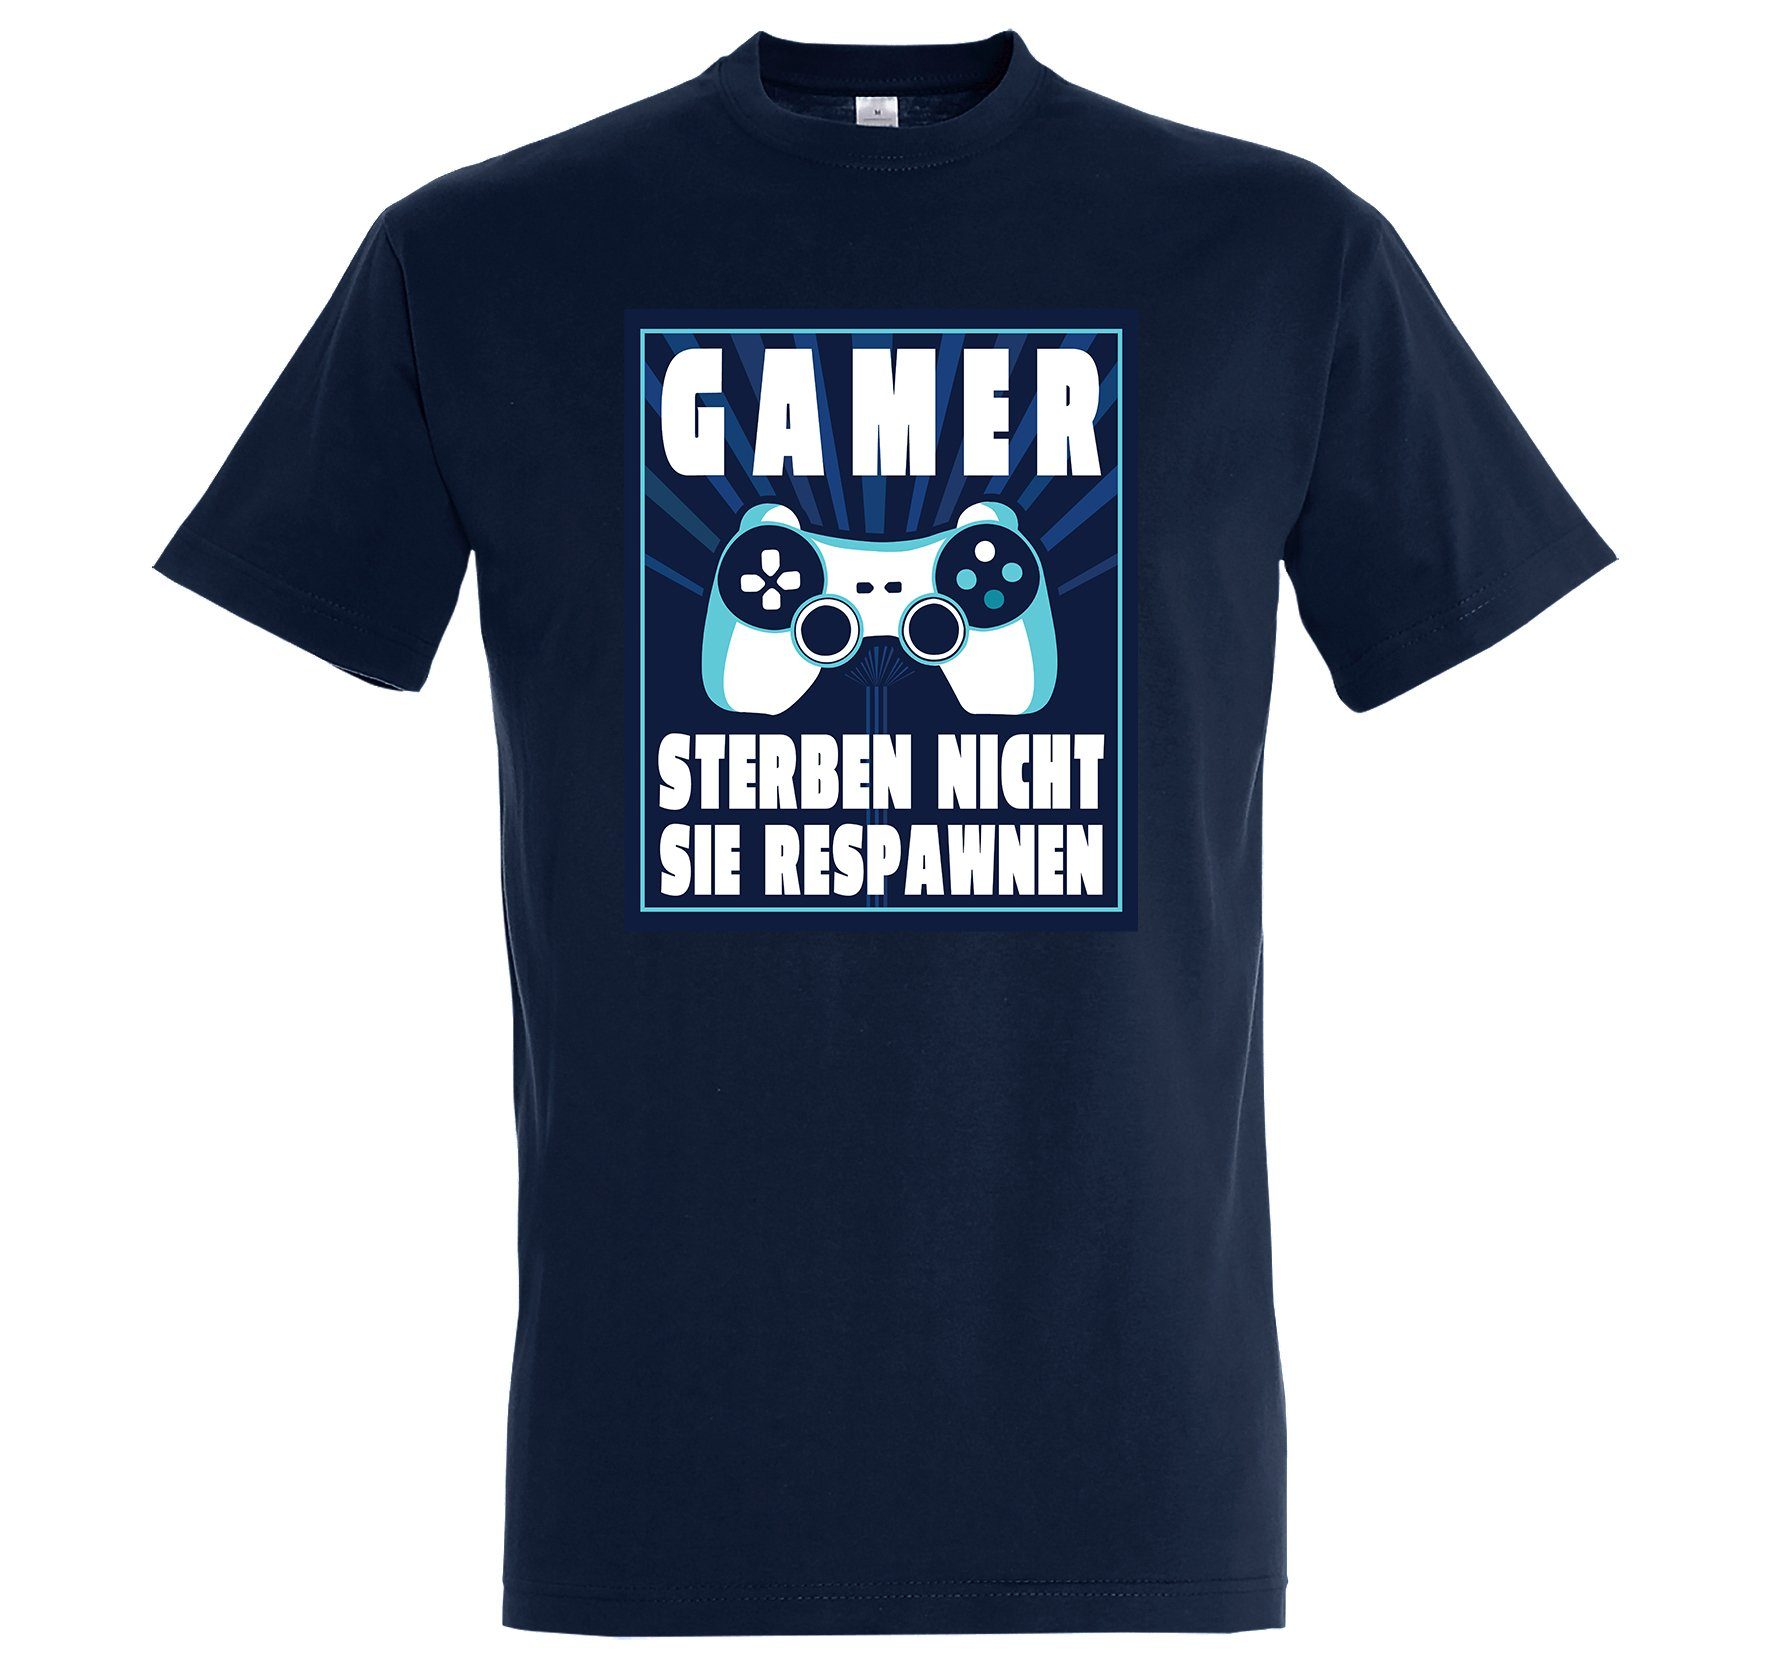 Youth Designz T-Shirt "Gamer Sterben Nicht, Sie Respawnen" Herren T-Shirt mit lustigem Spruch Navy